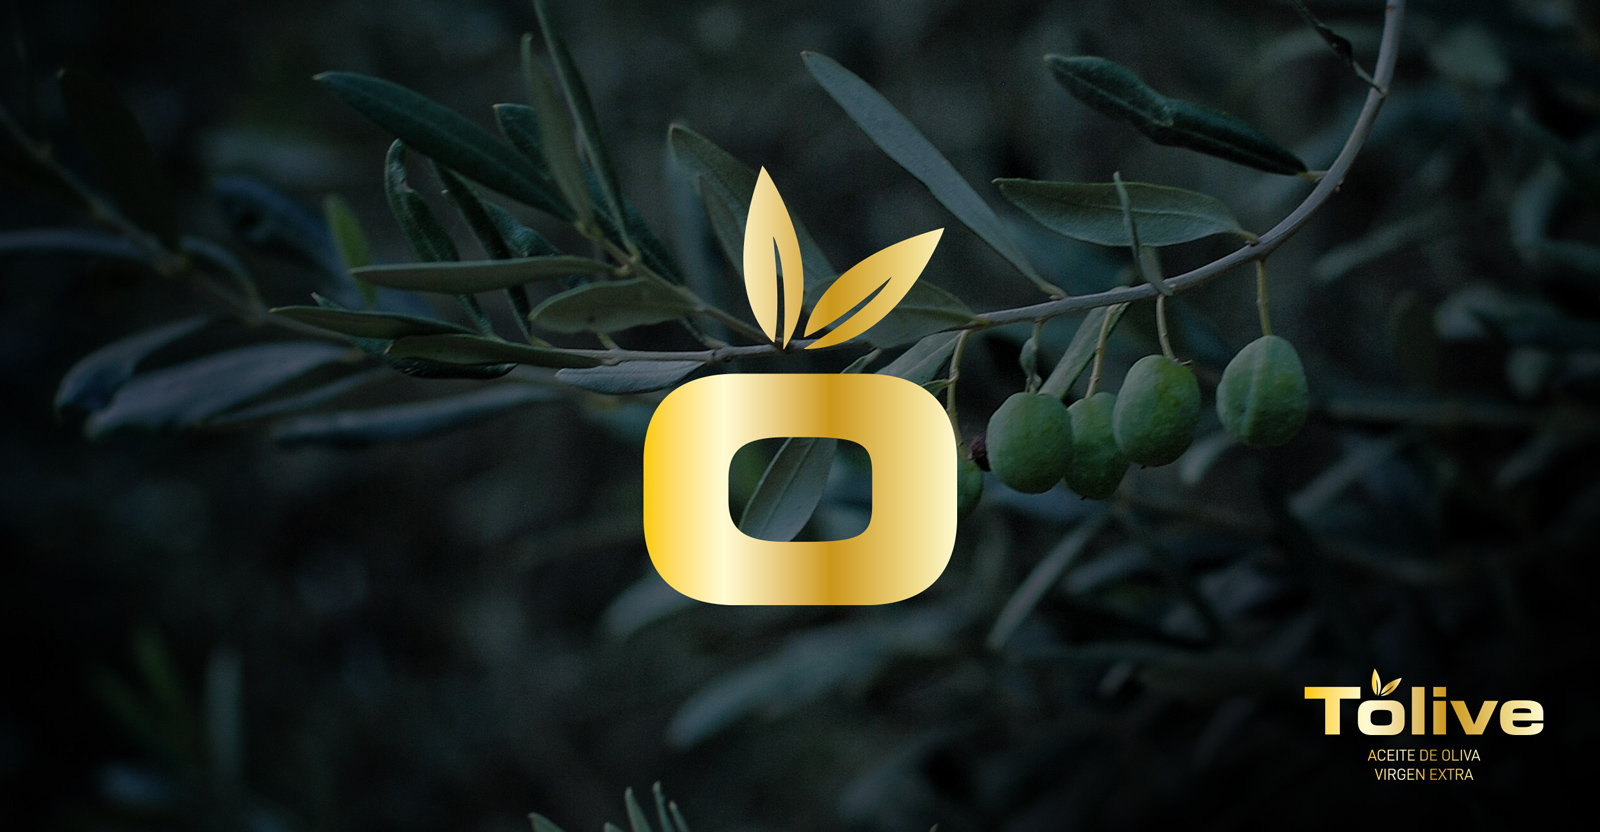 Diseño gráfico y creativo de etiquetas de aceite de oliva virgen extra TOLIVE